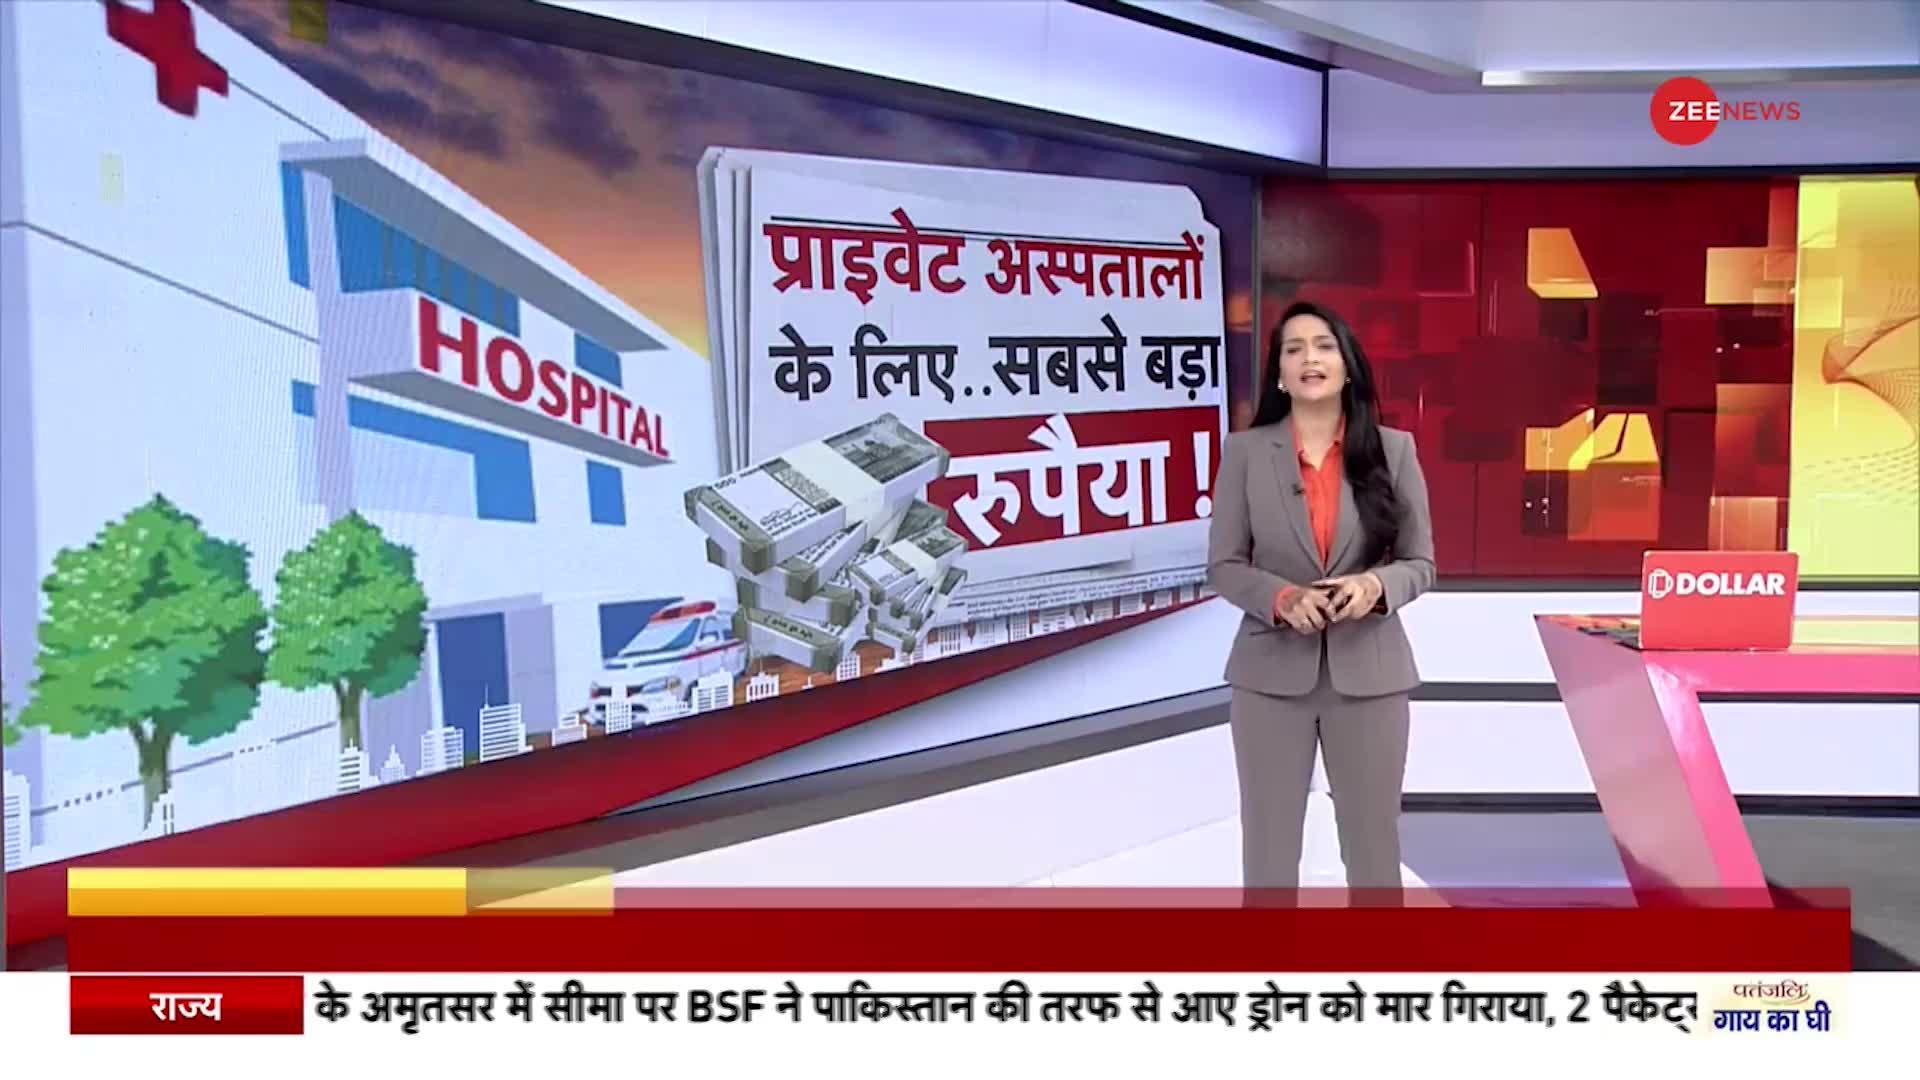 Delhi News: प्राइवेट अस्पतालों के लिए सबसे बड़ा रुपैया!